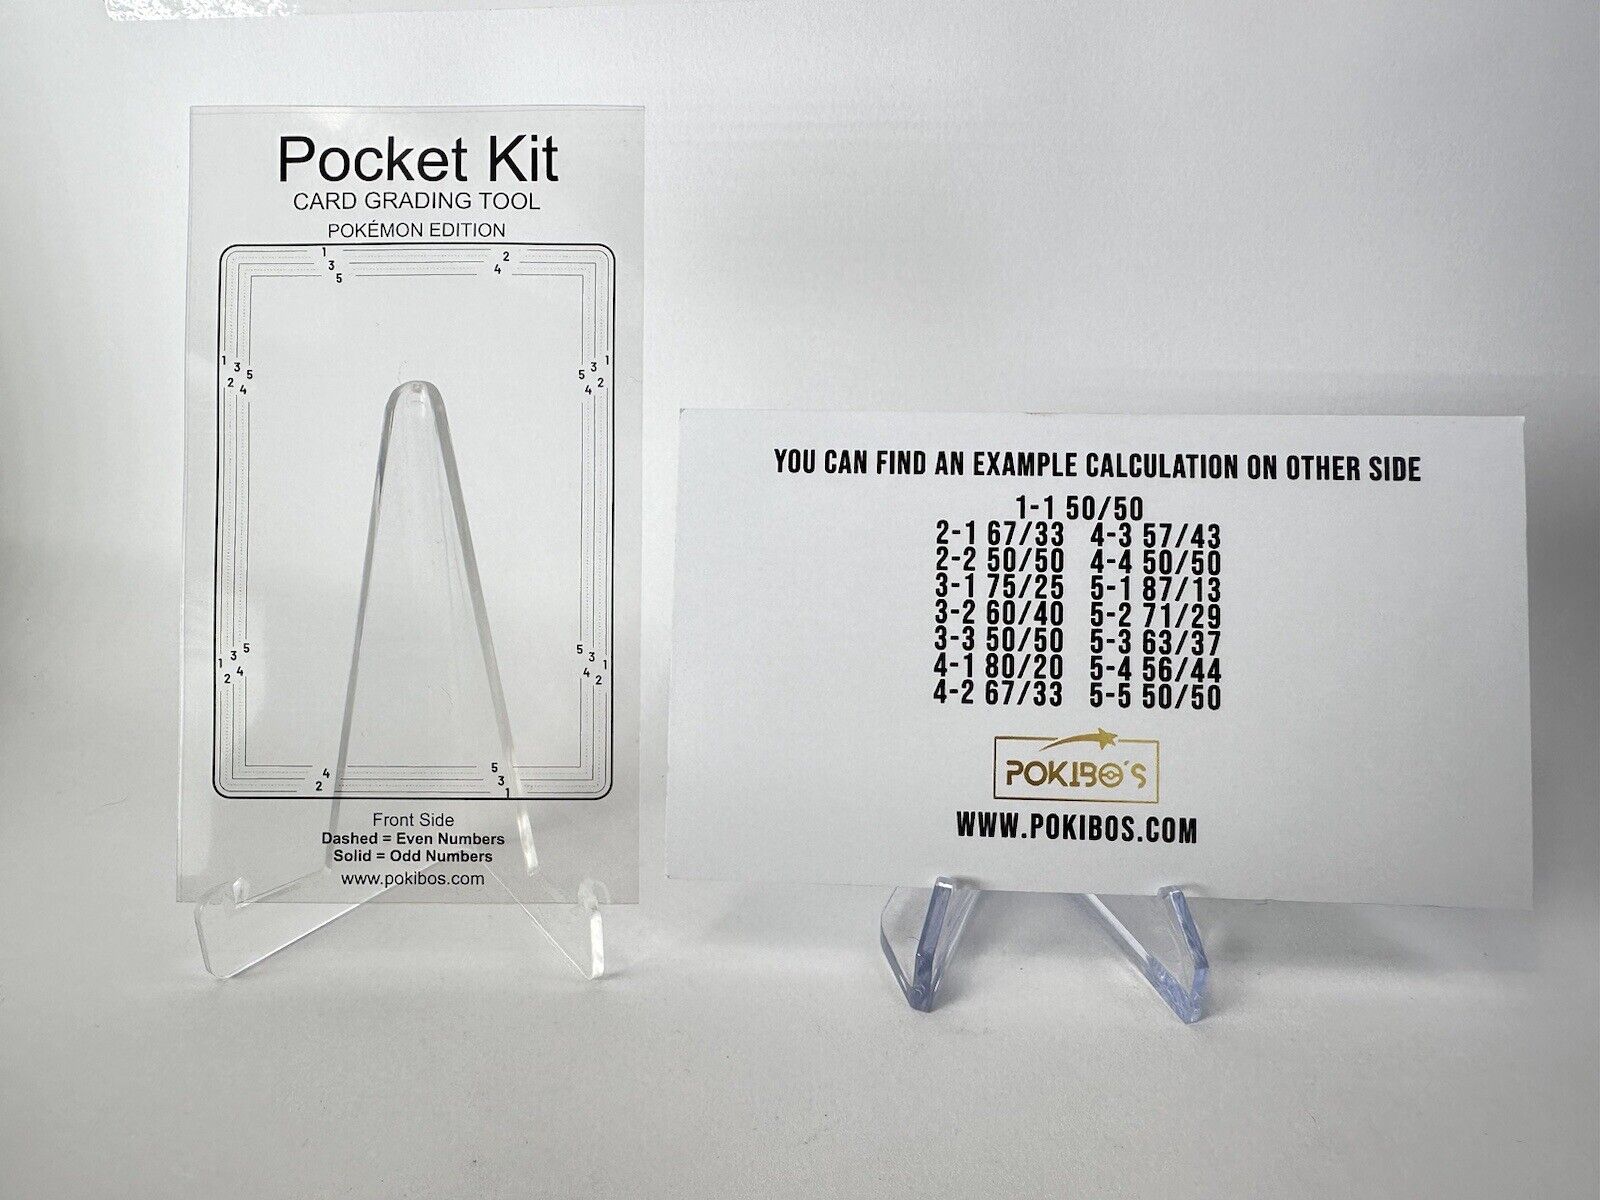 Pocket Kit Center Tool for Pokemon Cards - Grading Tool PSA BGS CGC Grading